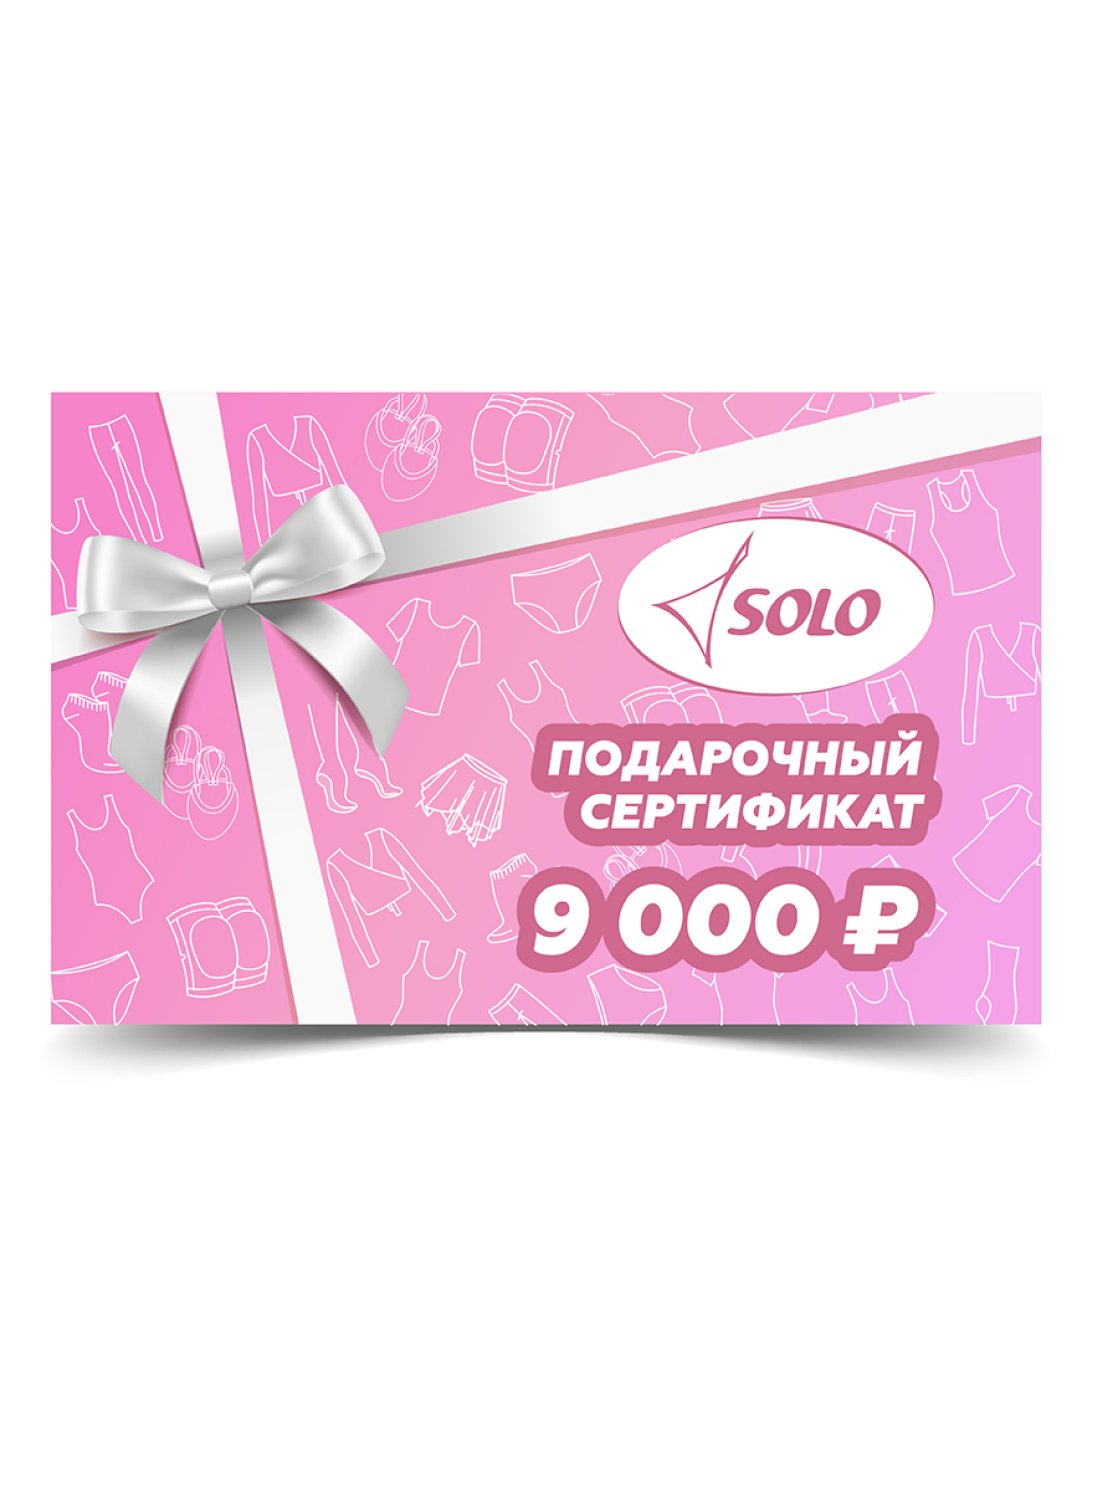 Электронный подарочный сертификат номиналом 9 000 рублей